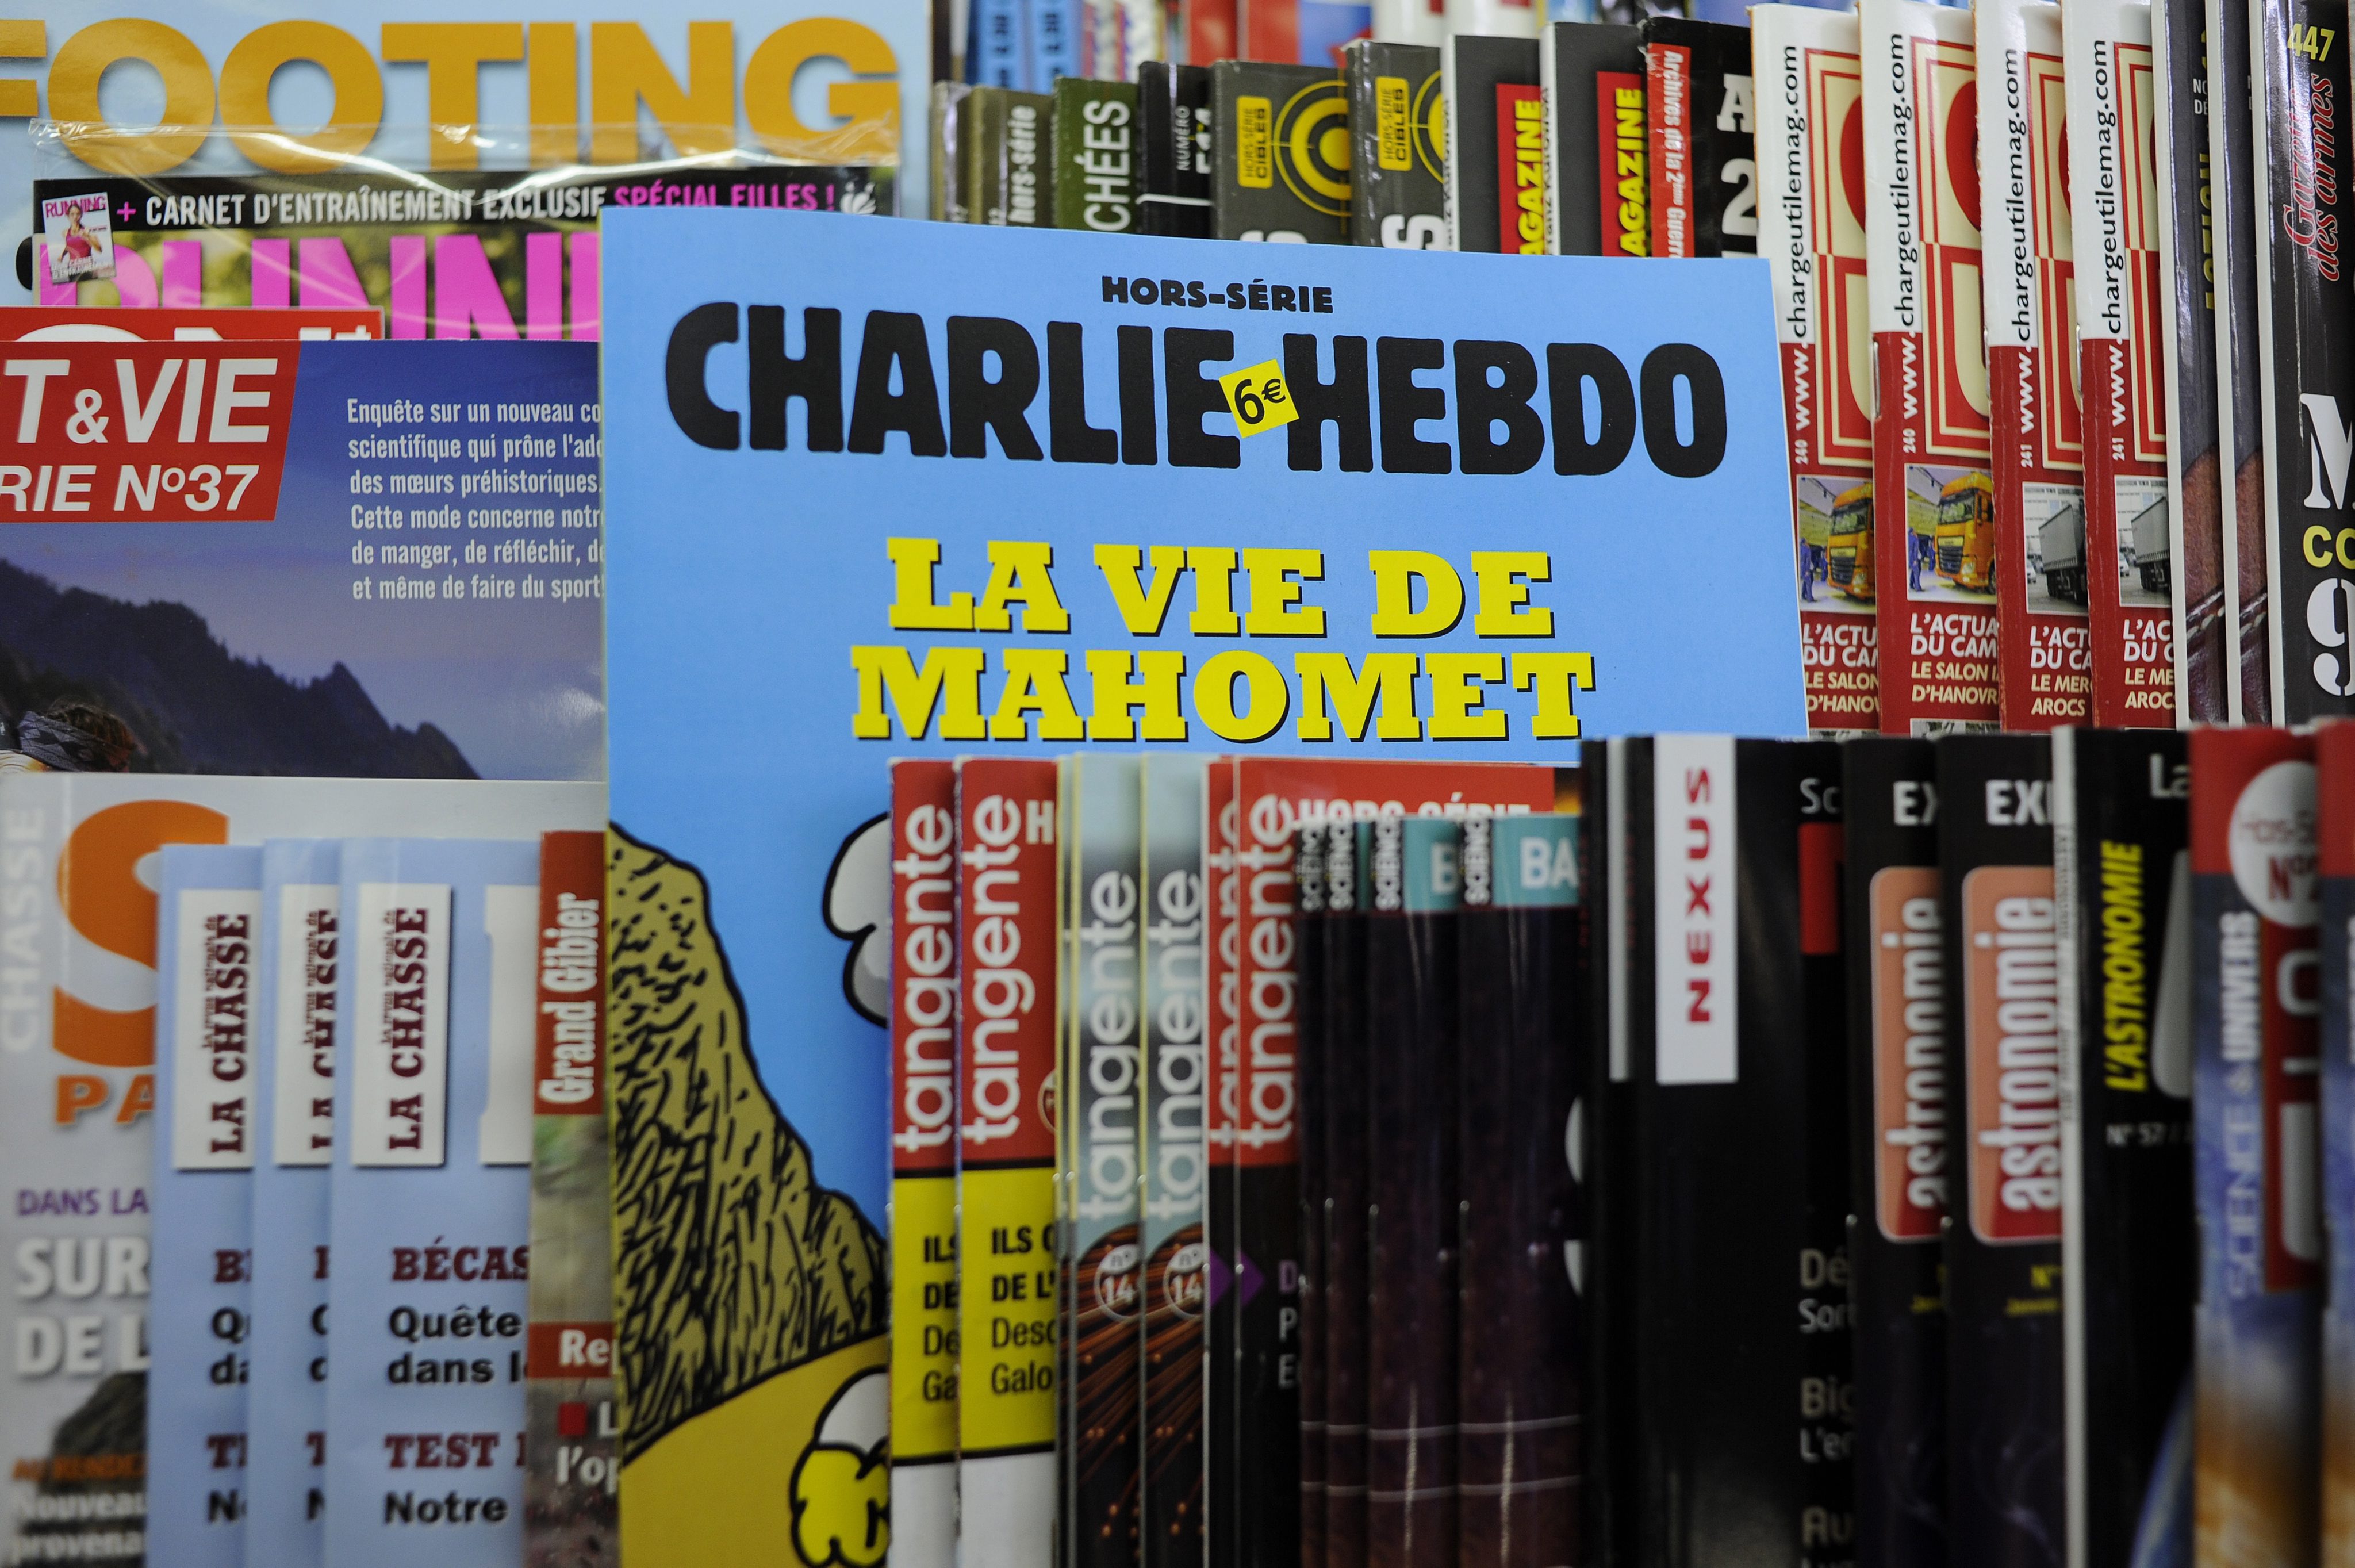 Τέσσερις κορυφαίοι γάλλοι σκιτσογράφοι, Wolinski, Charb, Cabu, Tignous, νεκροί από τις σφαίρες των τρομοκρατών